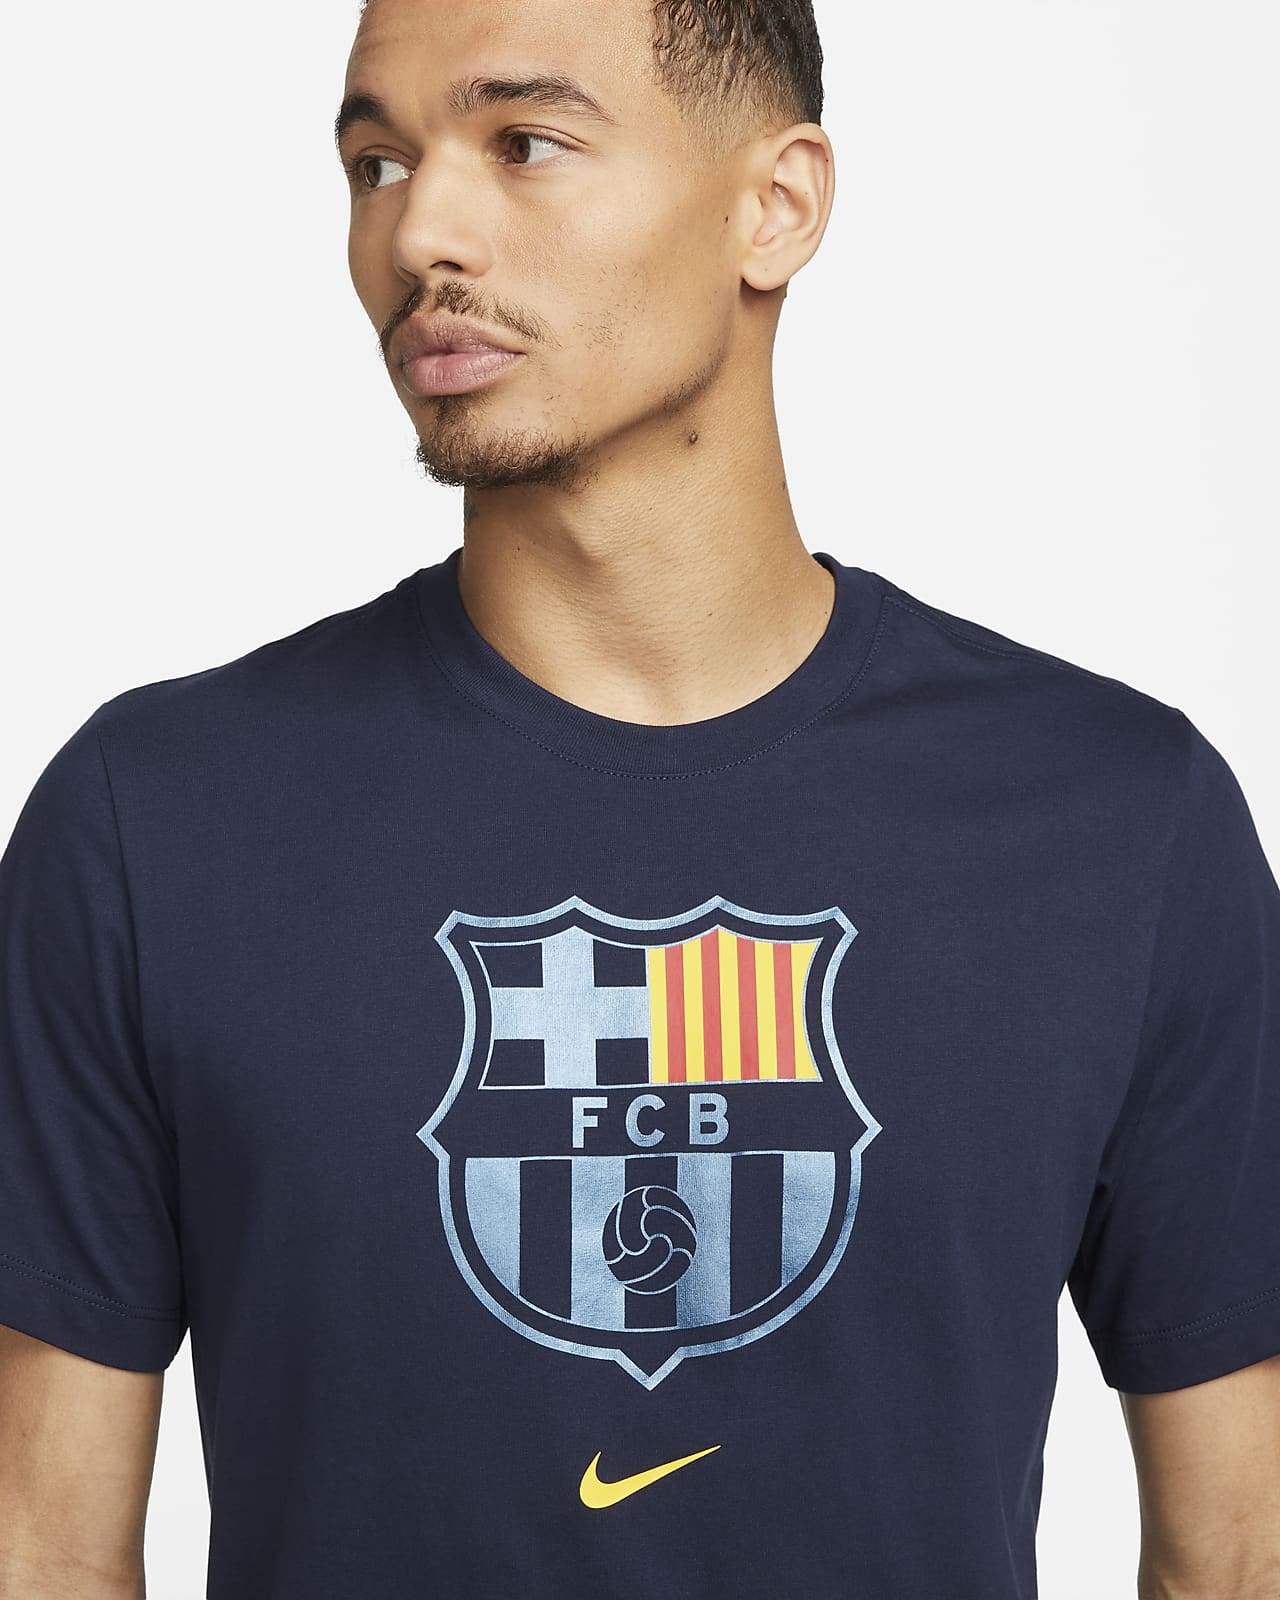 Beschrijving Goodwill Persoonlijk FC Barcelona Crest Men's Soccer T-Shirt. Nike.com